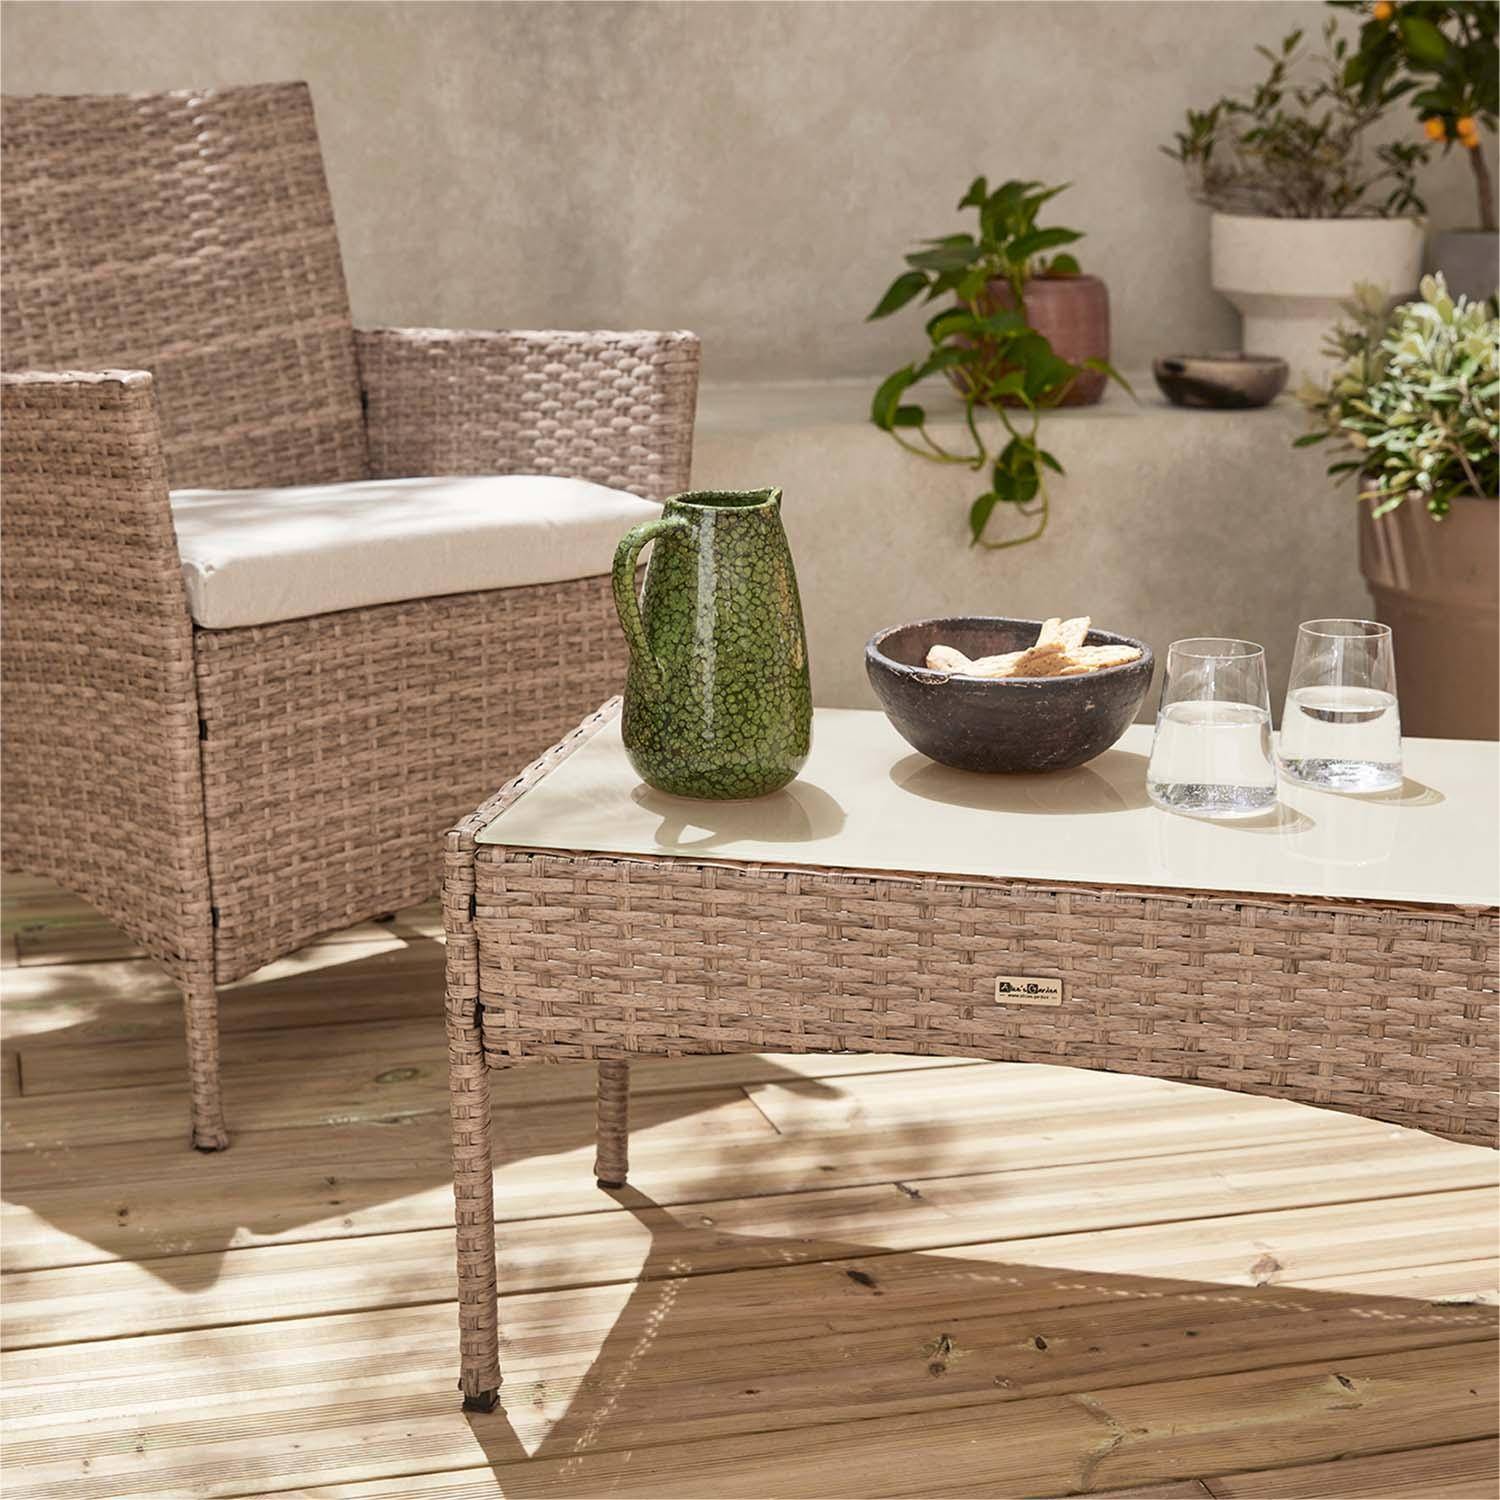 Tuinset Moltès - 4 plaatsen - wicker - 2 fauteuils, 1 sofa en een salontafel, naturel/beige,sweeek,Photo2